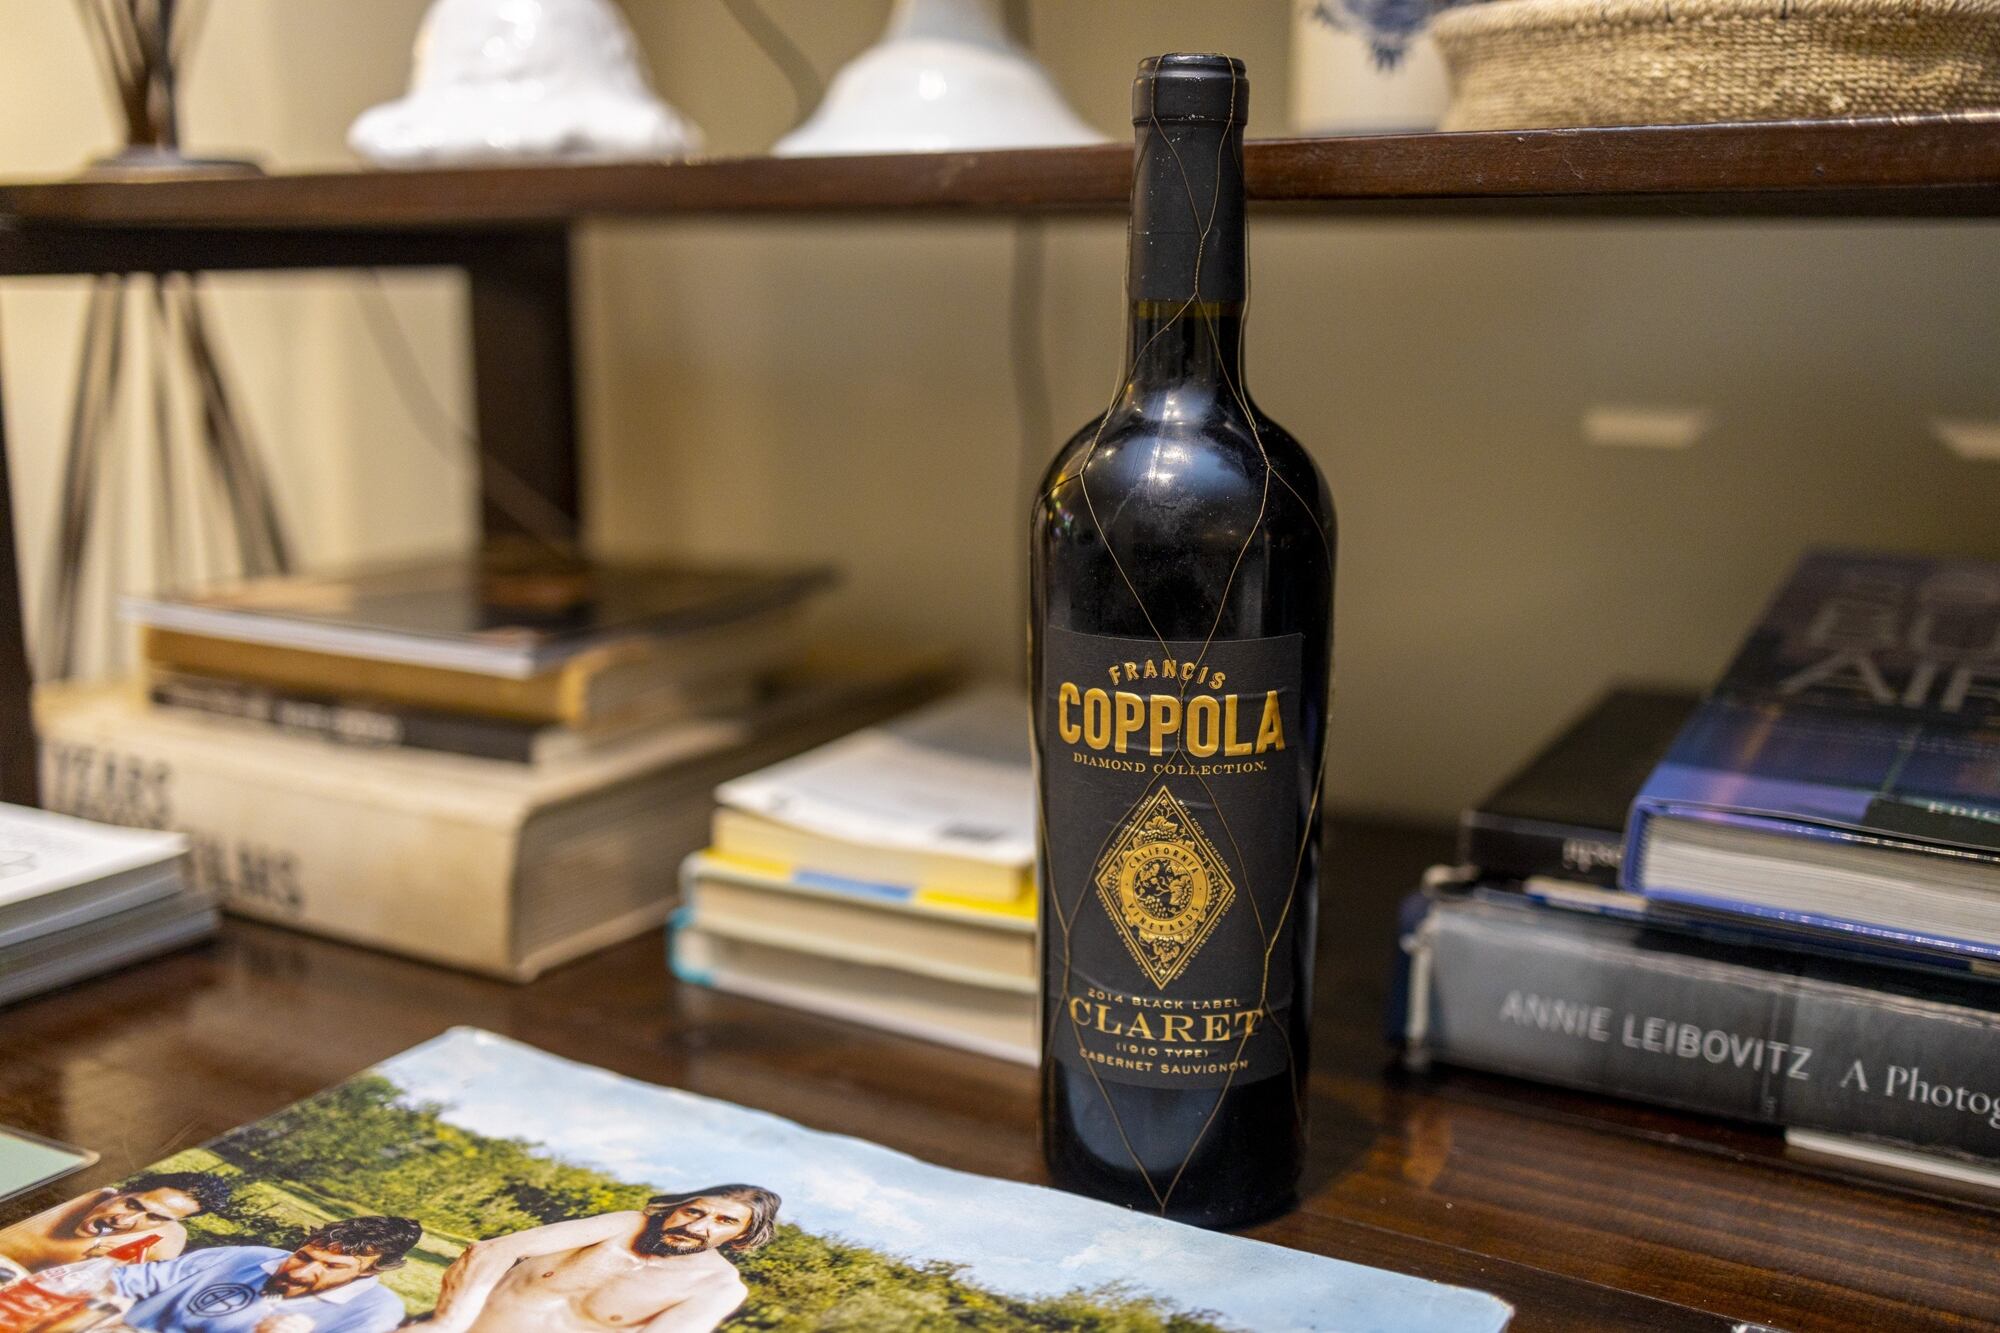 Al hotel también llegan los vinos provenientes de las bodegas de Coppola en Italia.